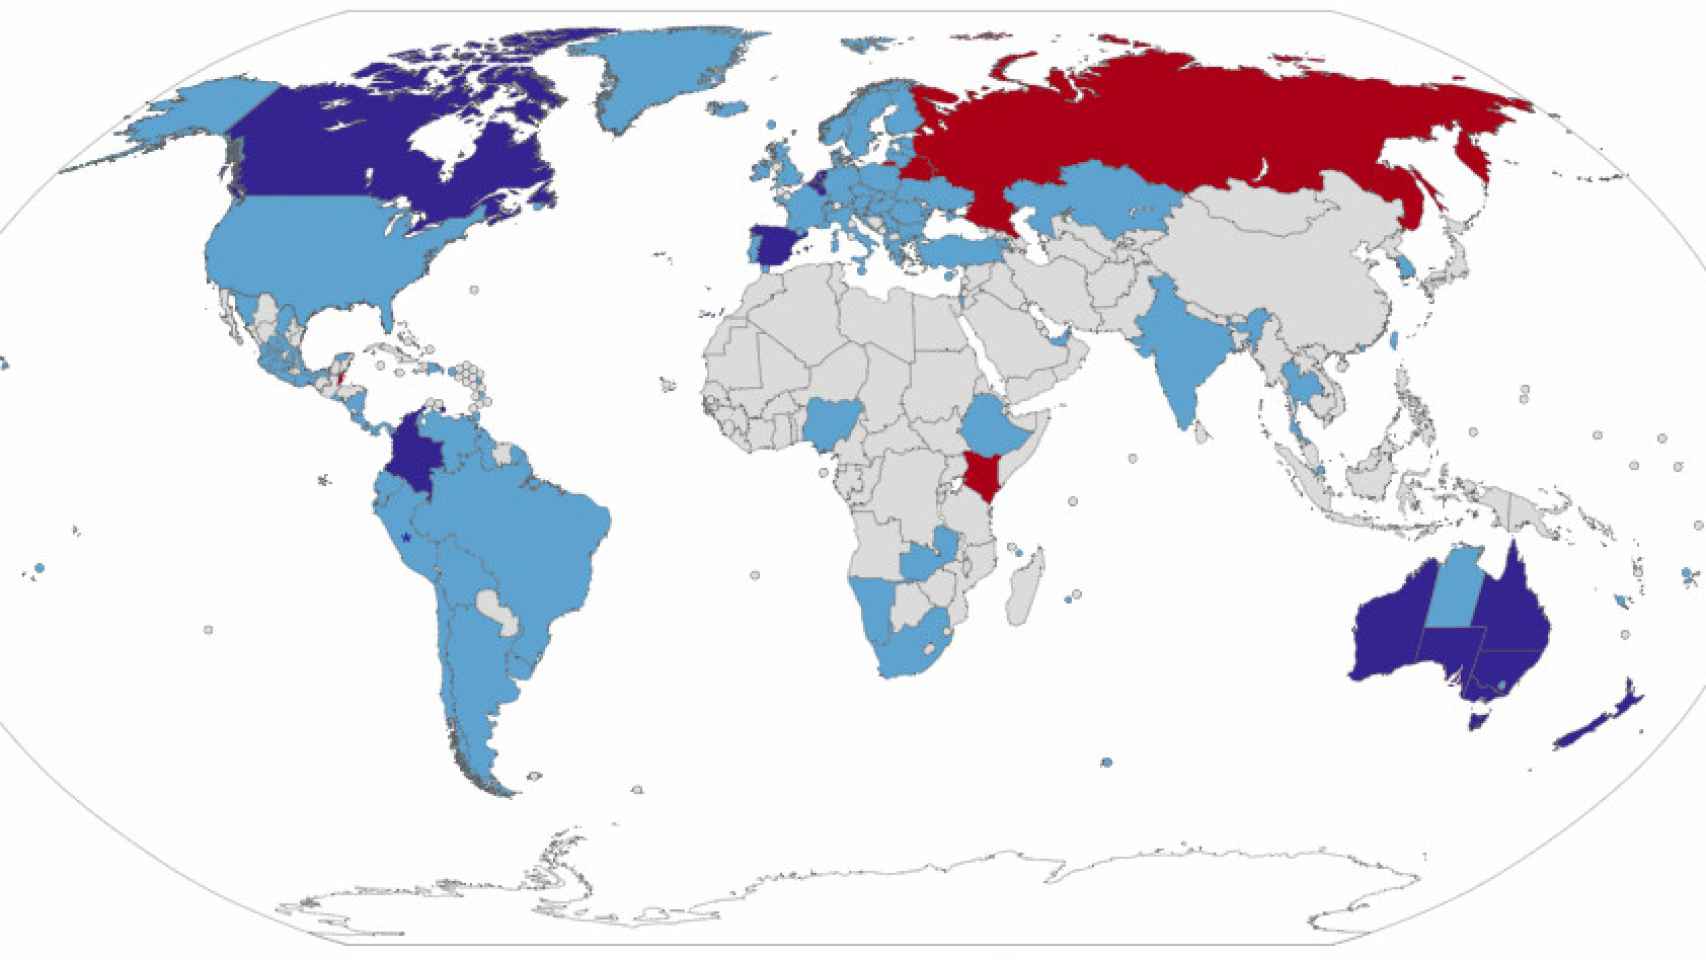 Mapa de la eutanasia en el mundo (en rojo, prohibida; en azul oscuro, aprobada de forma activa para personas con enfermedades incurables o padecimientos graves, crónicos e imposibilitantes).